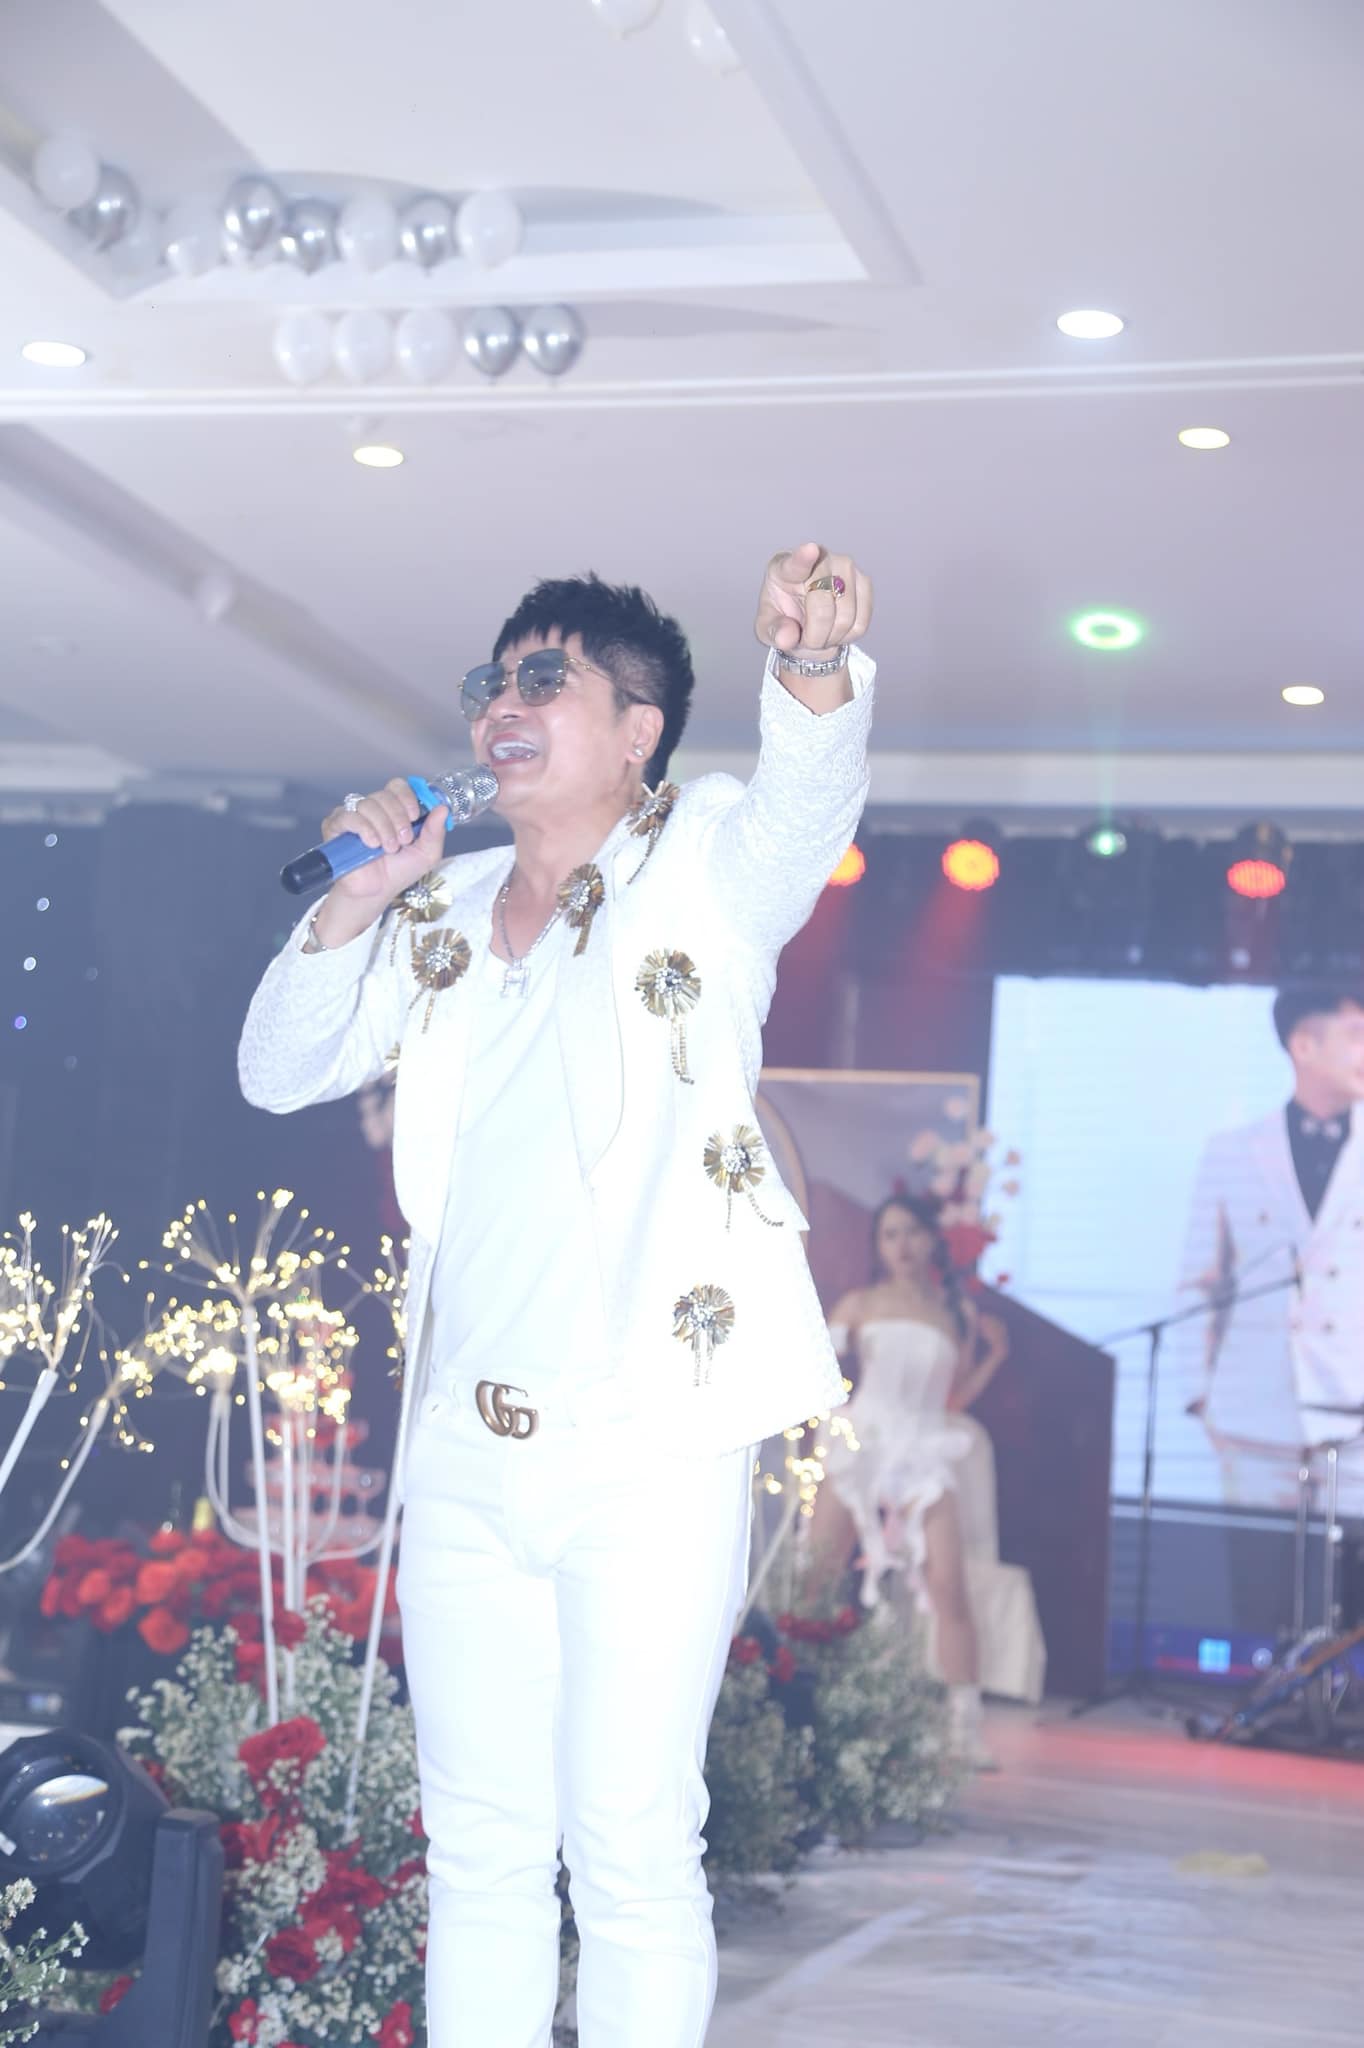 “Vua nhạc sàn” hé lộ cát-xê đi hát ngày Tết, thừa nhận "đau đầu" vì vợ kém 20 tuổi